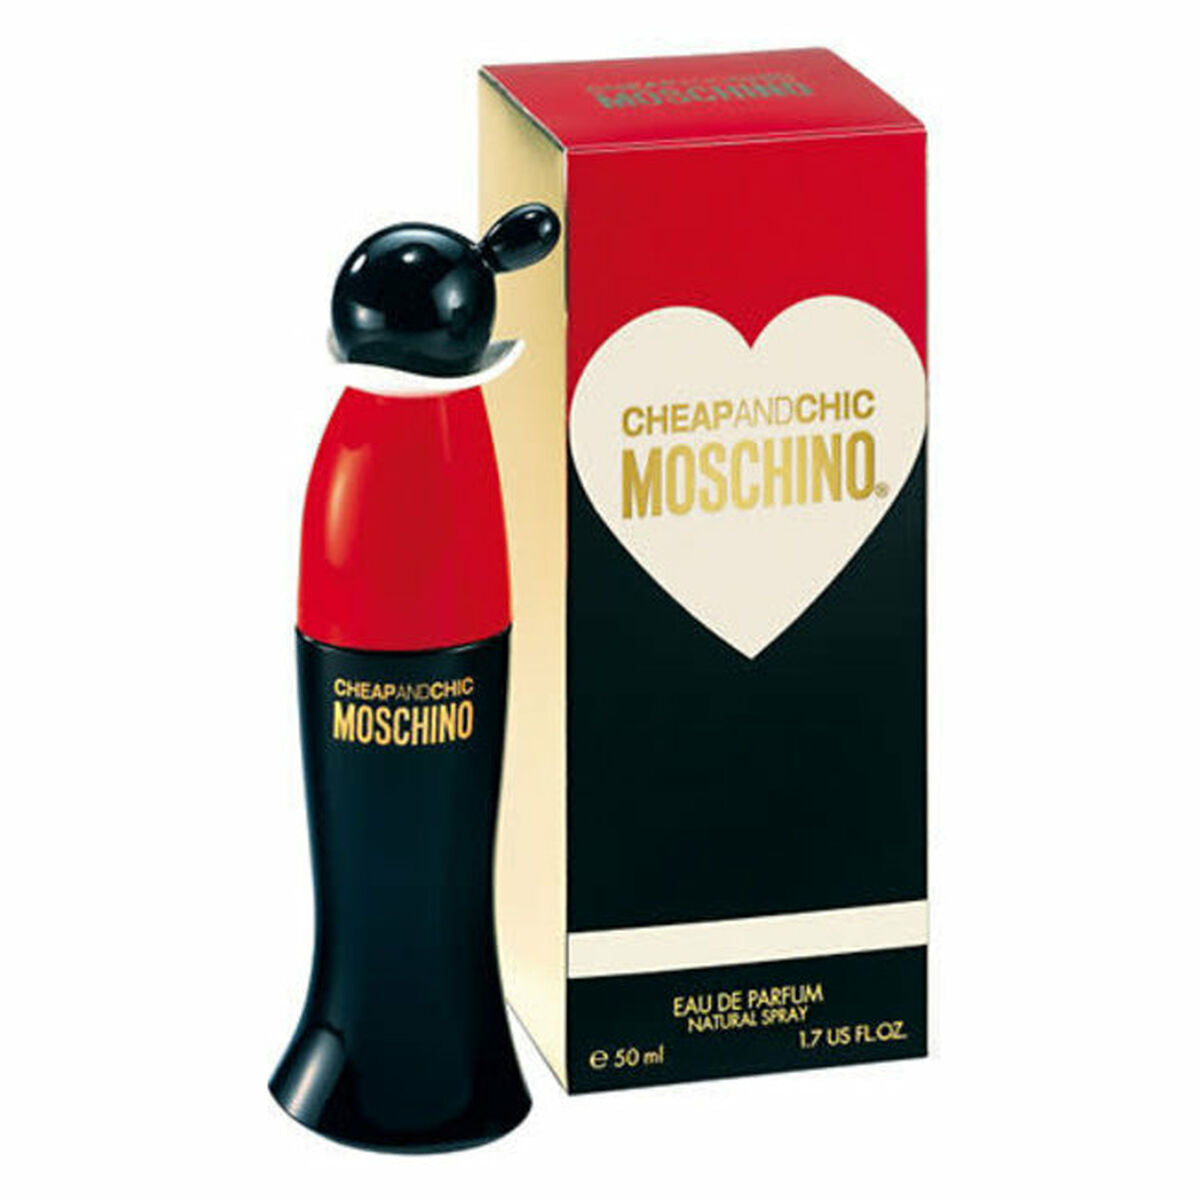 Frauen Parfüm Moschino billig & schick EDP (50 ml)